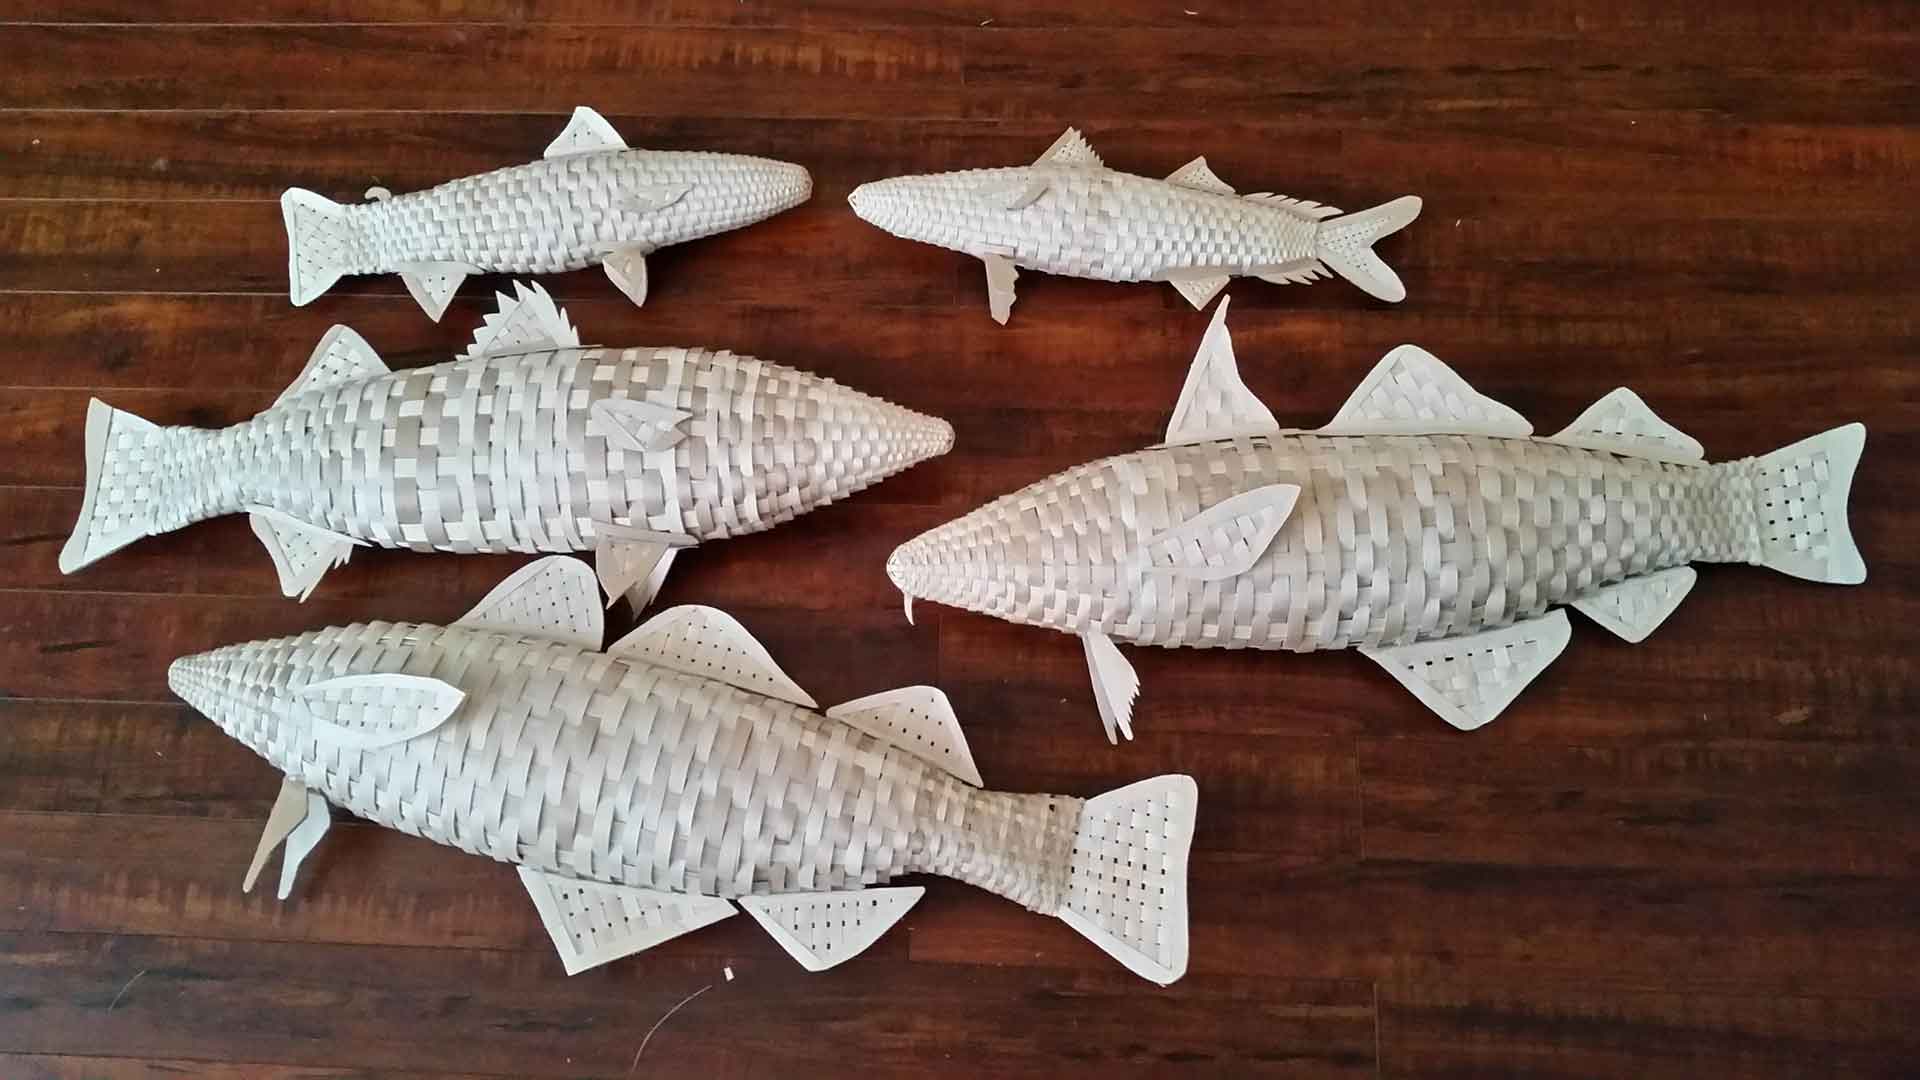 Plusieurs espèces de poissons tissées à partir de lamelles de bois.